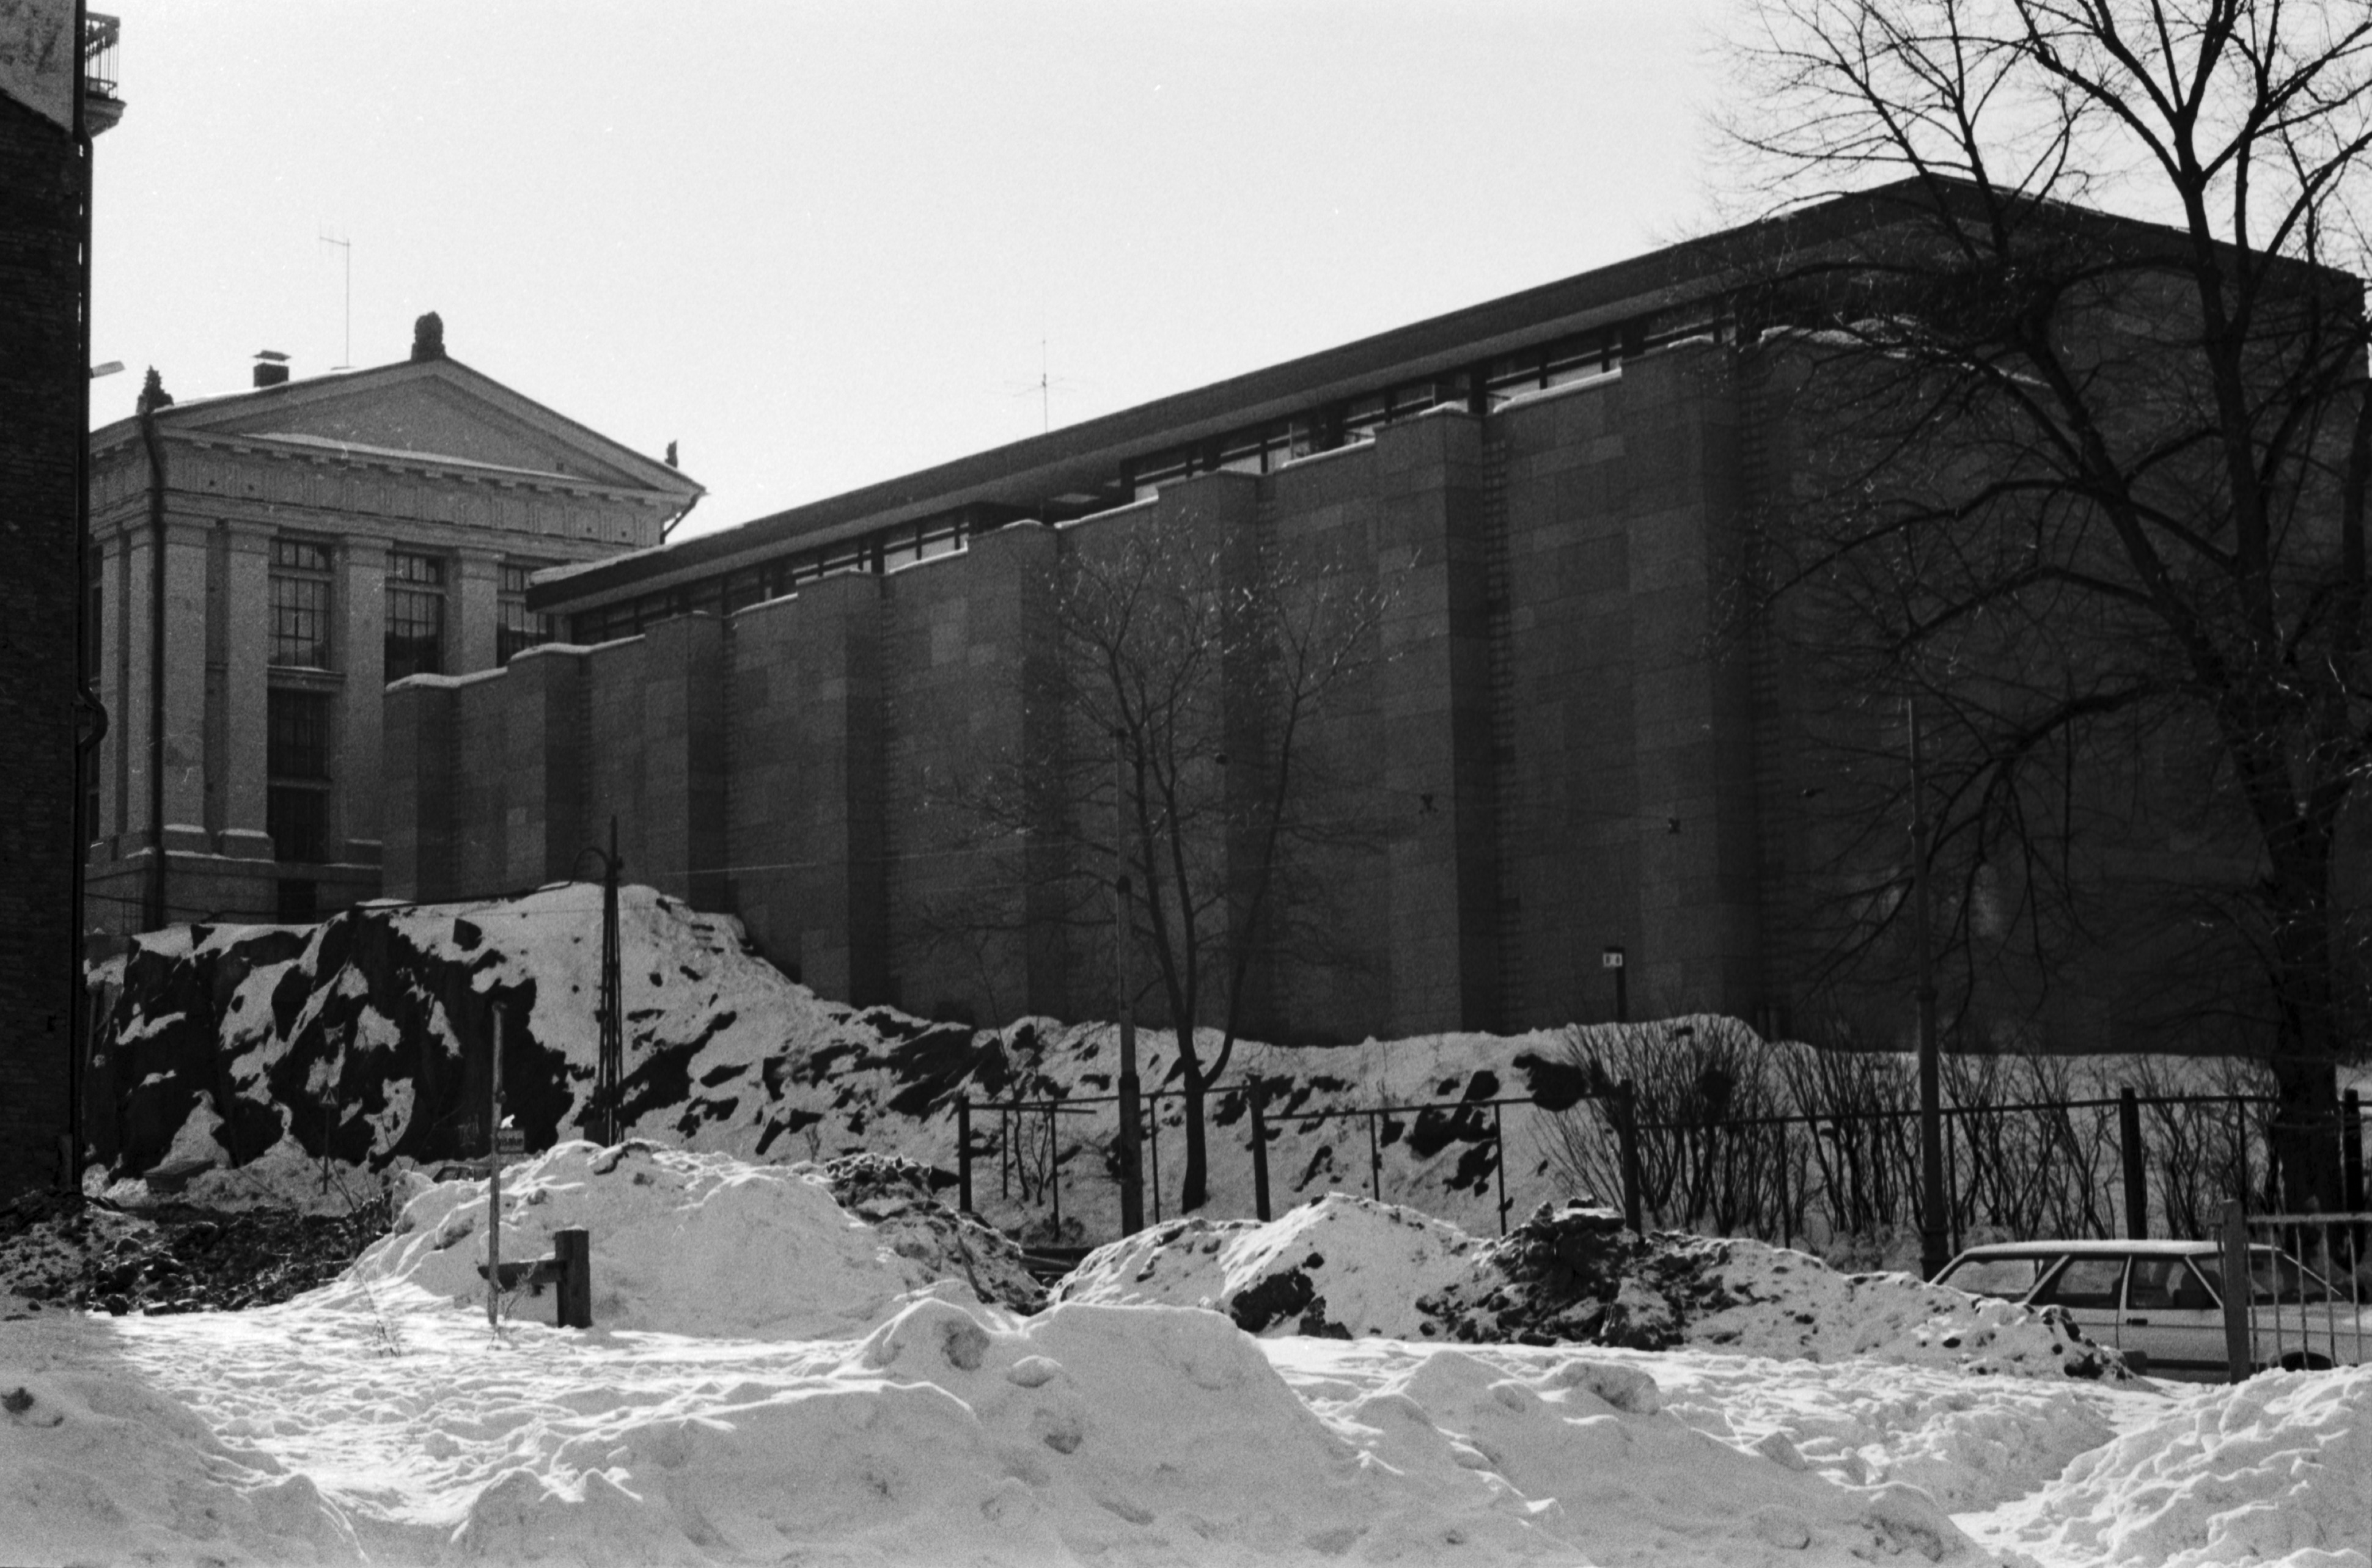 Rauhankatu 17. Valtionarkiston (Kansallisarkisto) vuonna 1972 valmistunut lisärakennus Rauhankadulla. Näkymä Snellmaninkatu 19:n puretun talon lumiselta tontilta lounaaseen.